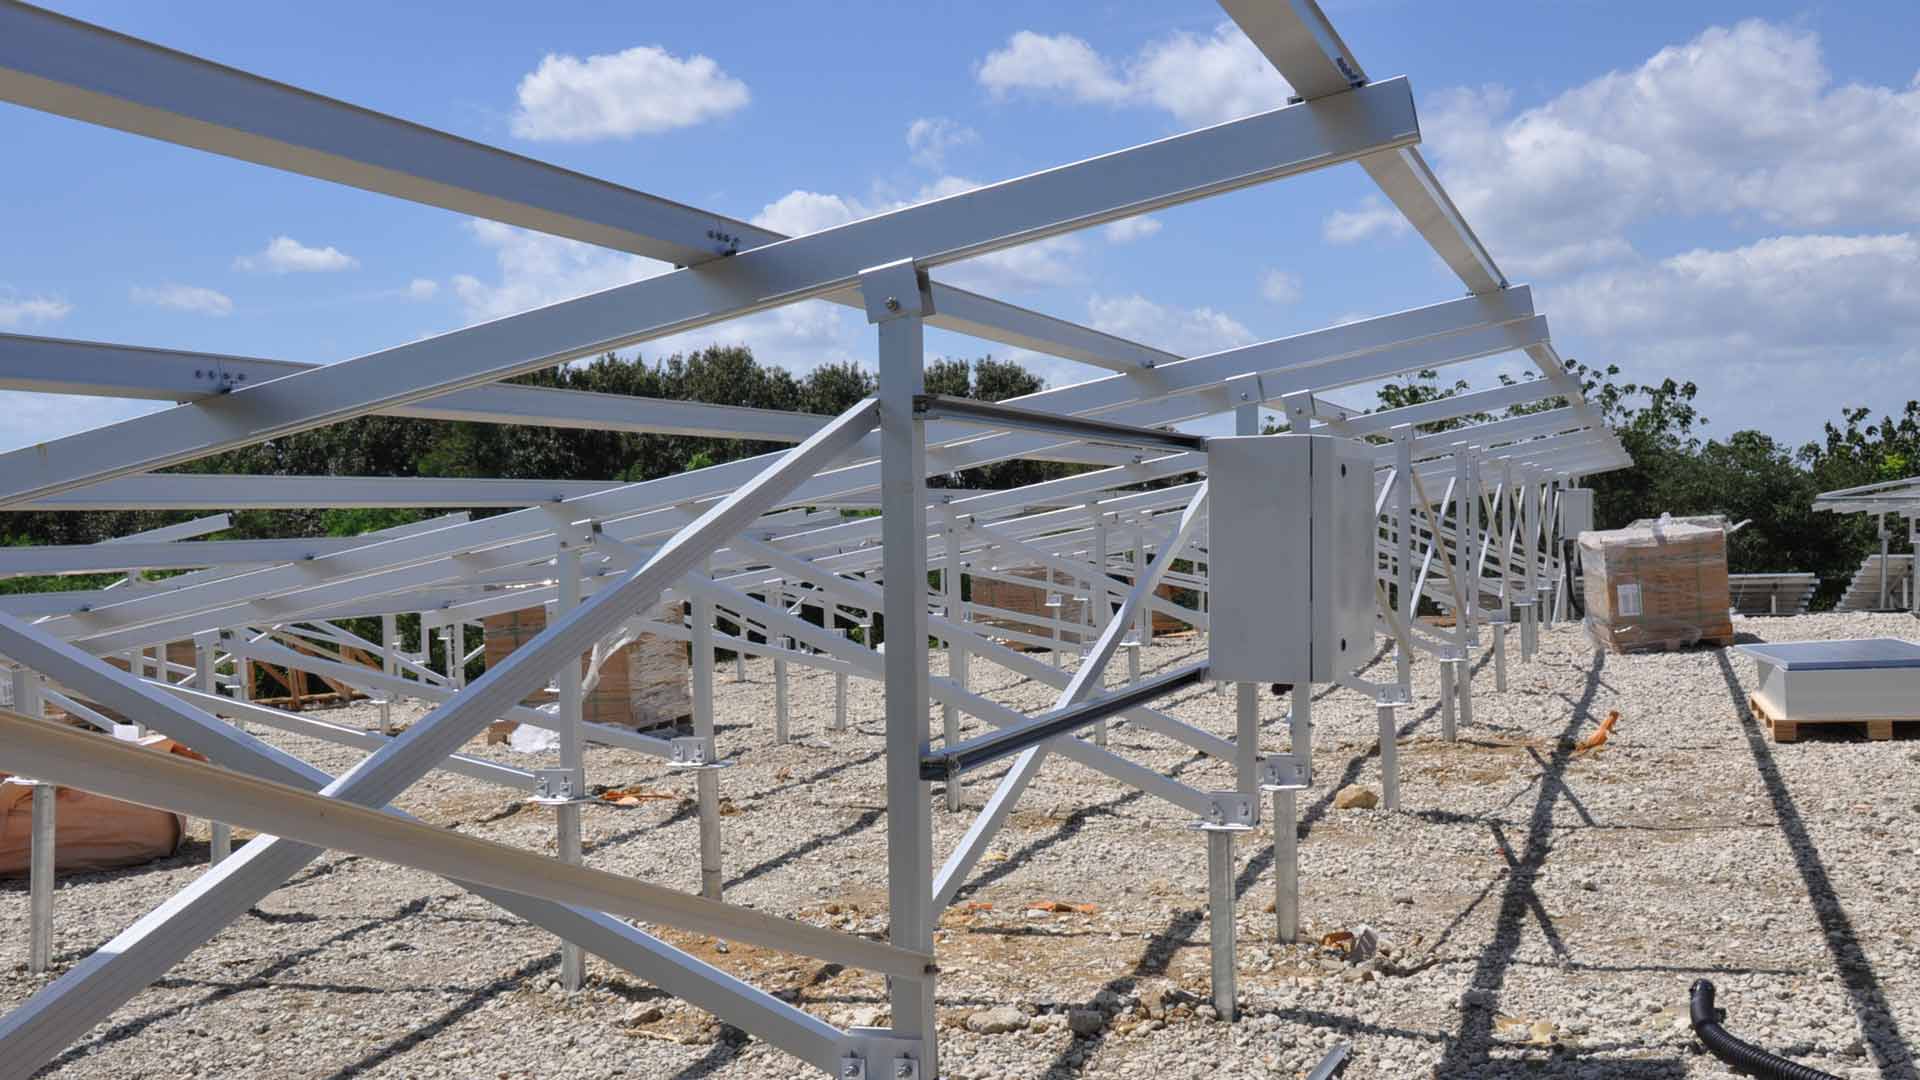 Proiect de sol solar, șurub de împământare ca fundație, cu console din aluminiu.